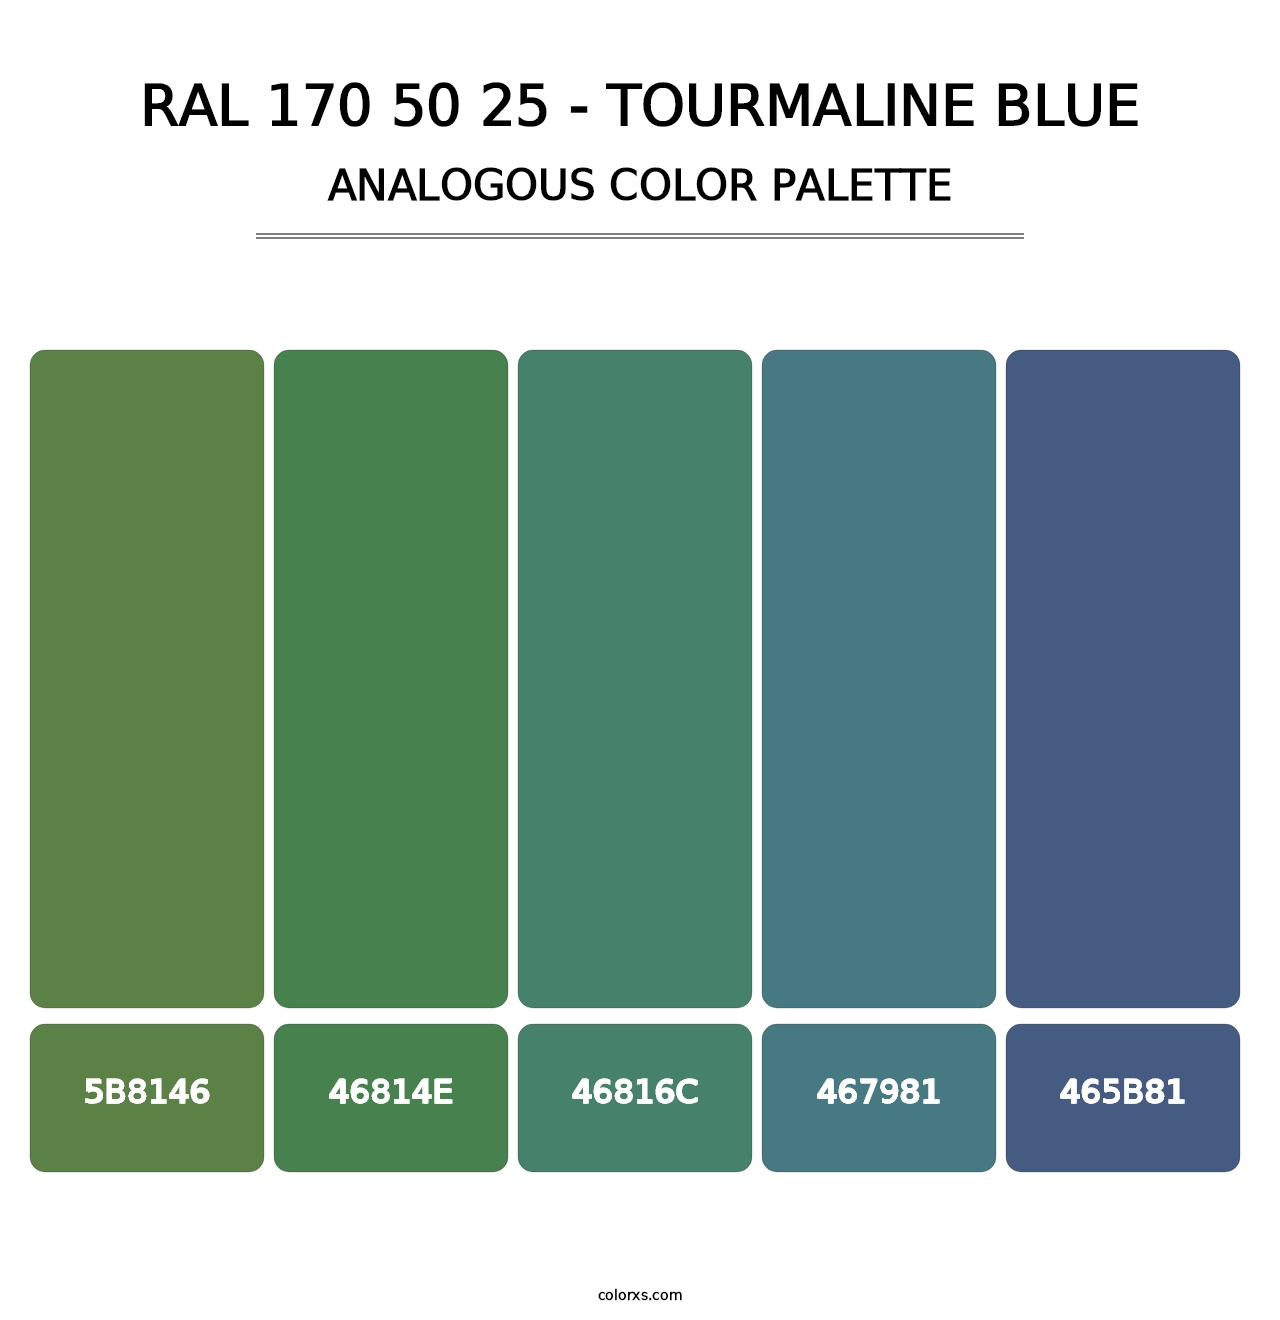 RAL 170 50 25 - Tourmaline Blue - Analogous Color Palette